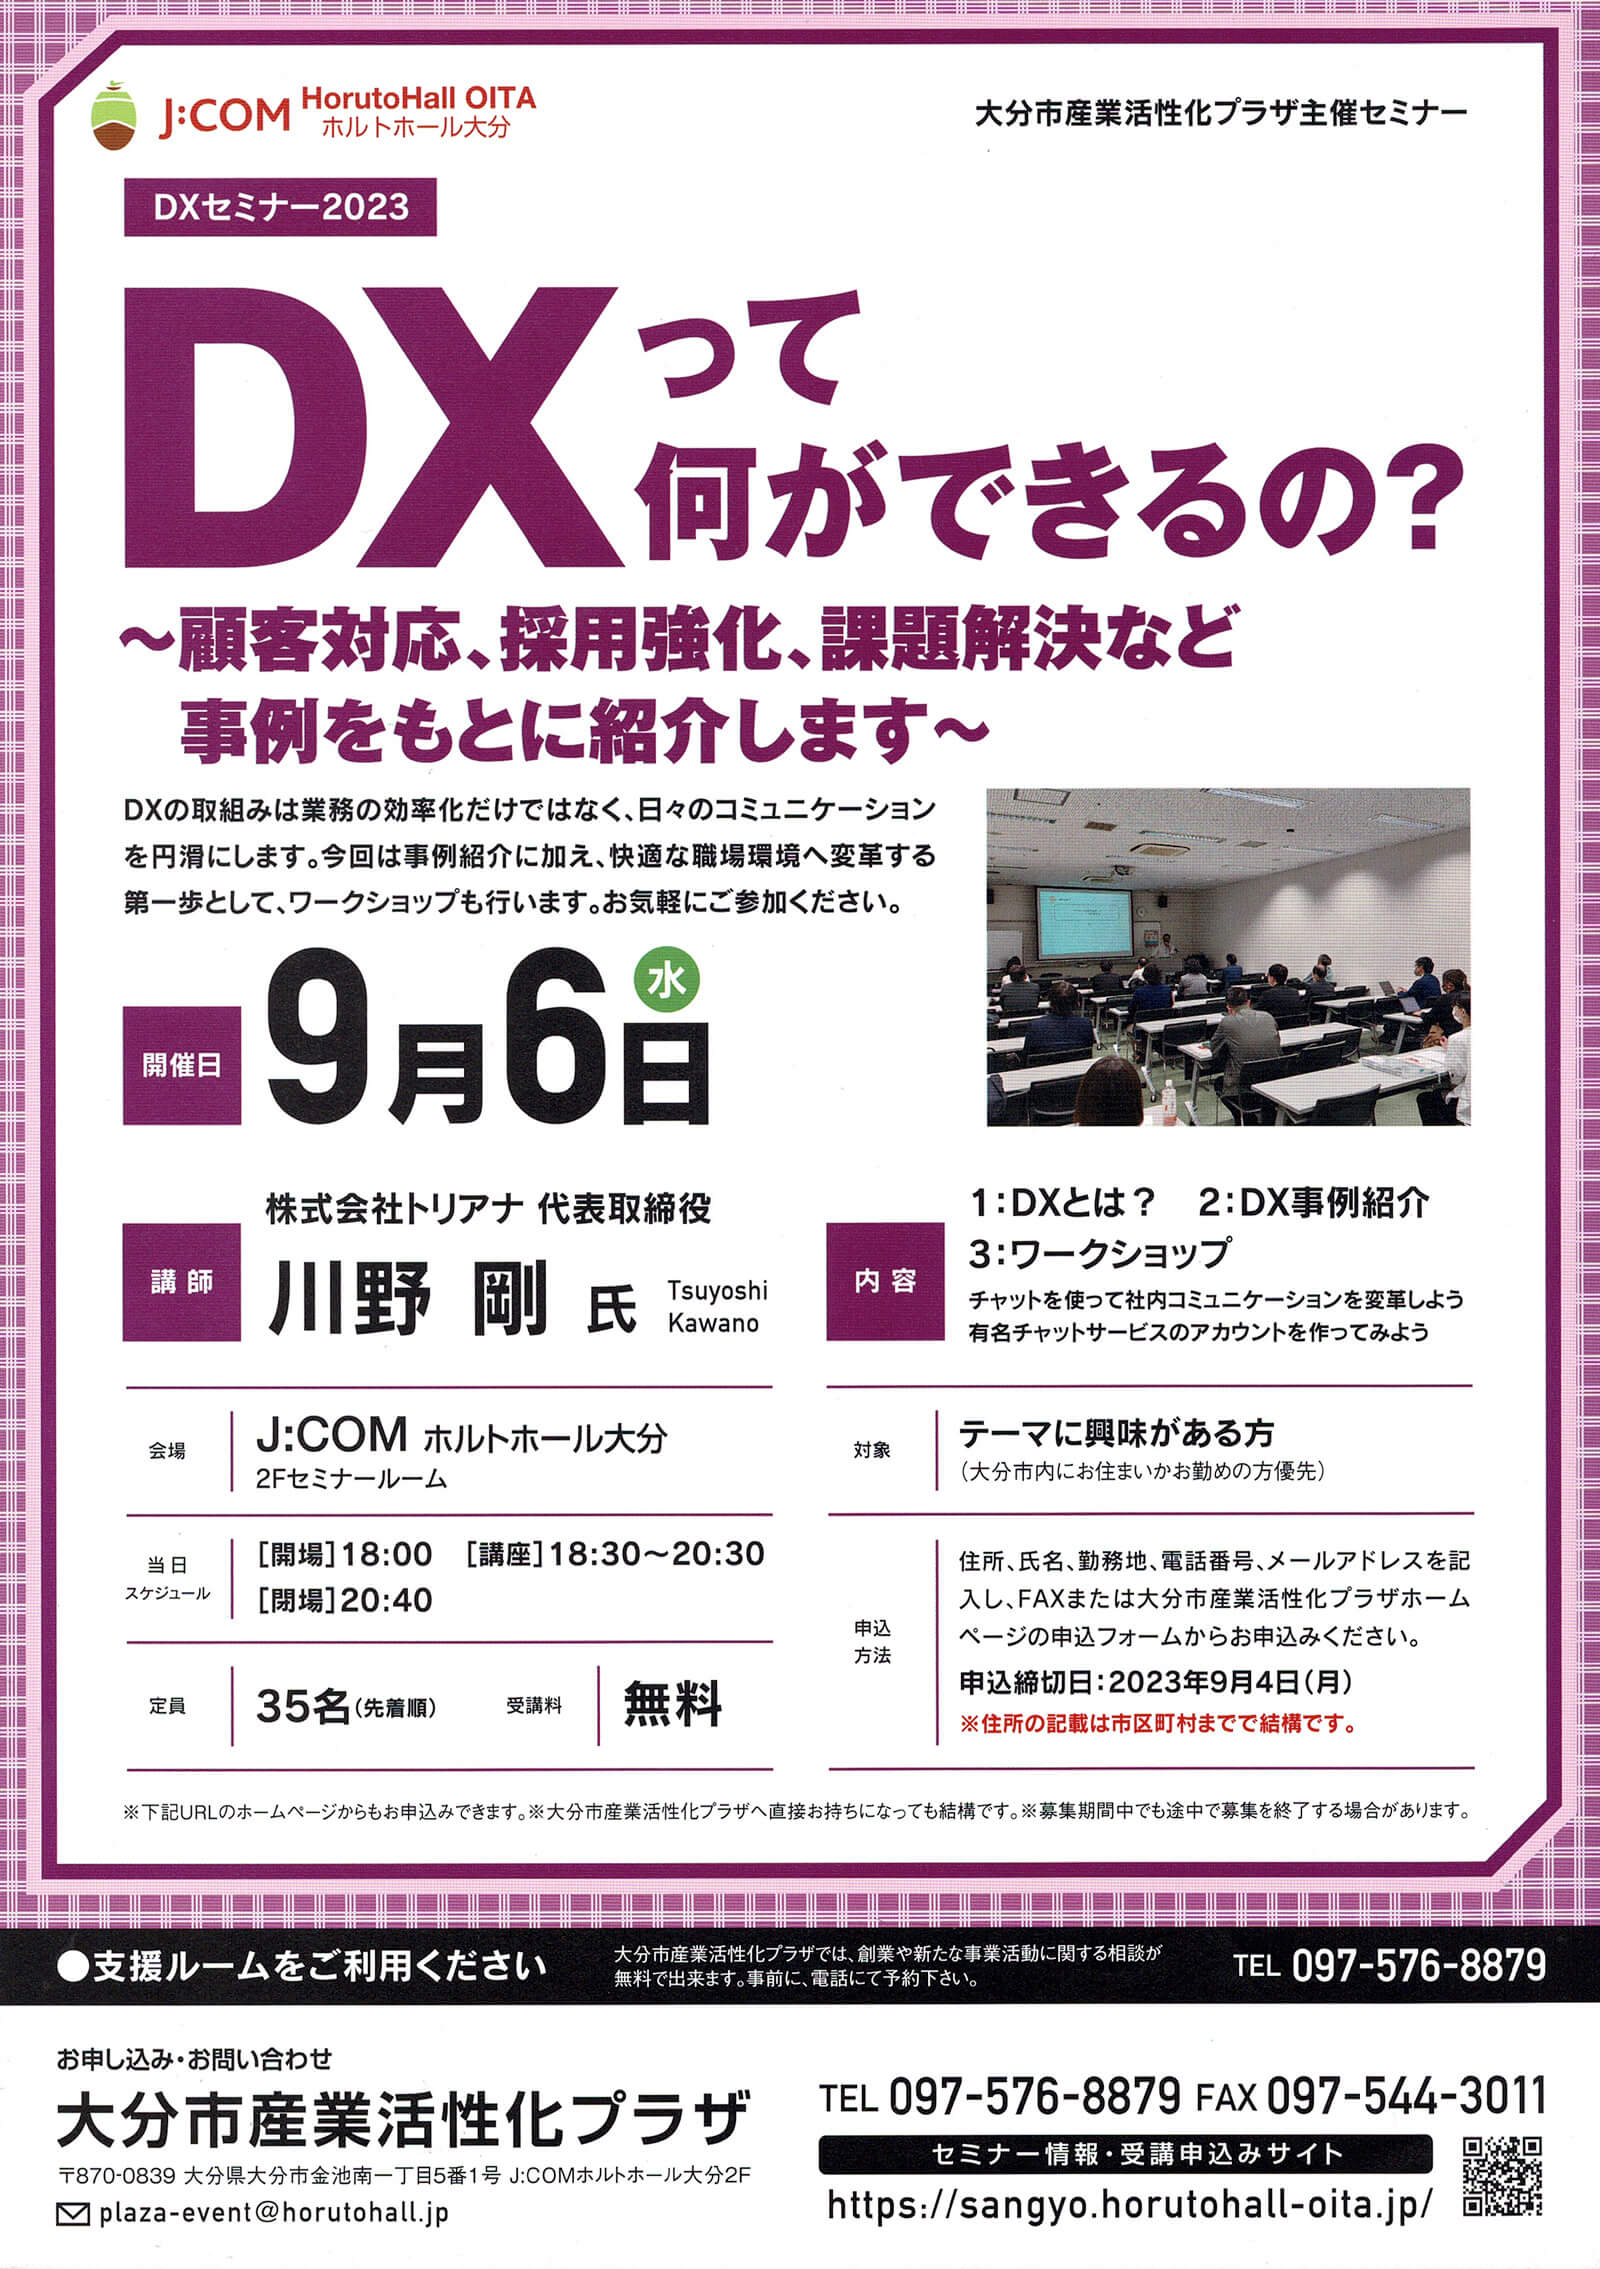 DXセミナー2023「DXって何ができるの？〜顧客対応、採用強化、課題解決など事例をもとに紹介します〜」